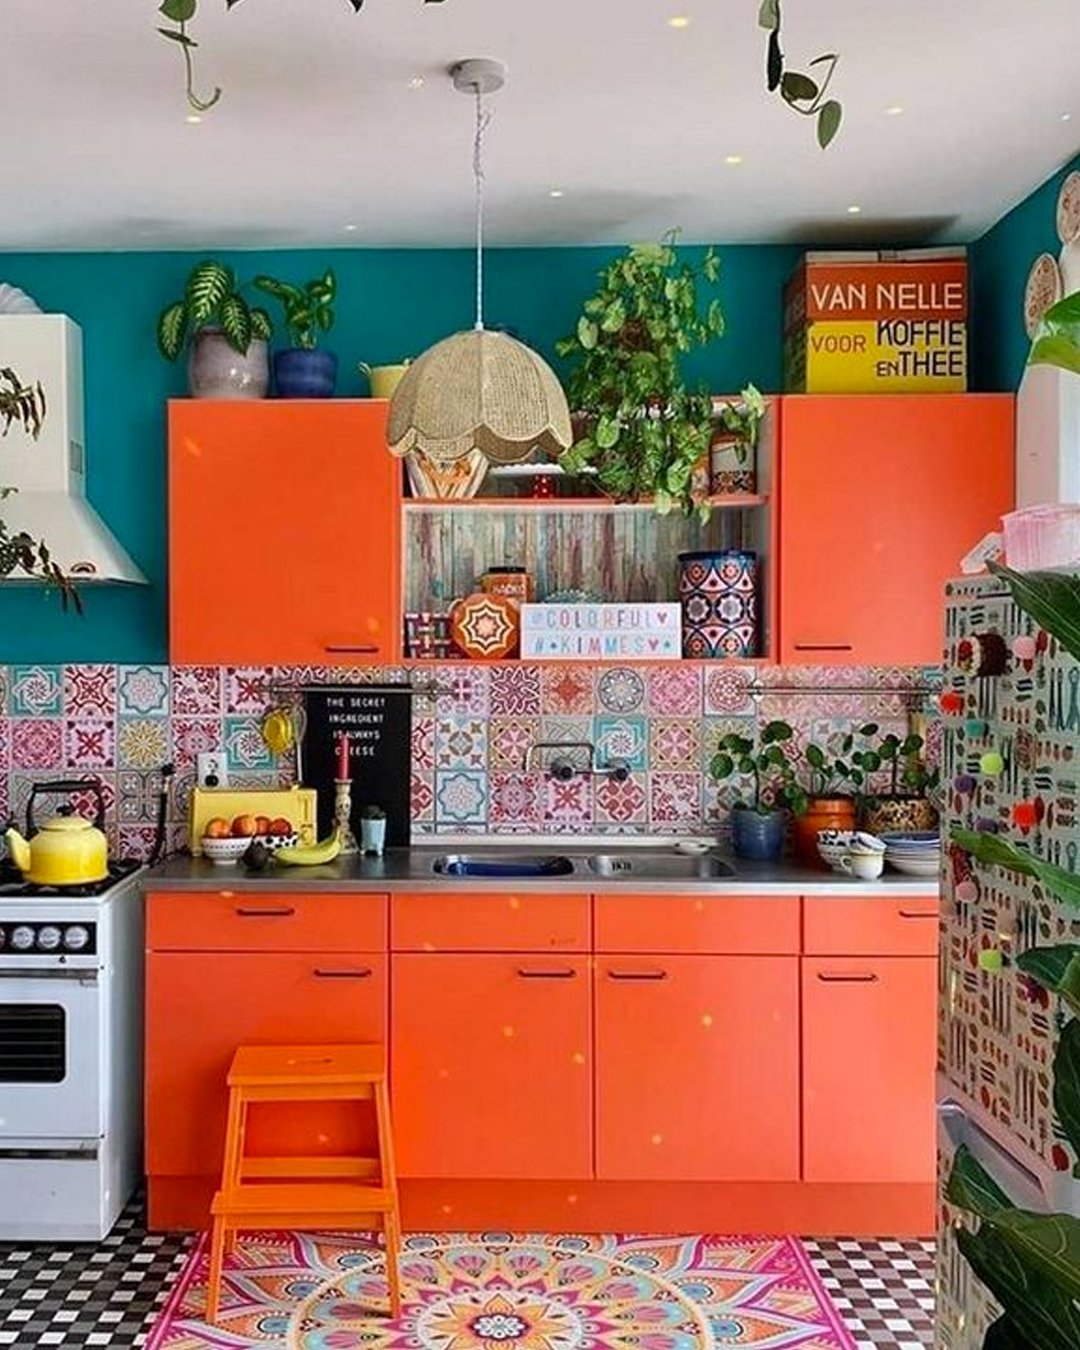 Como decorar a cozinha - Como decorar a cozinha - Como decorar a cozinha - Como decorar a cozinha - Como decorar a cozinha - https://stealthelook.com.br